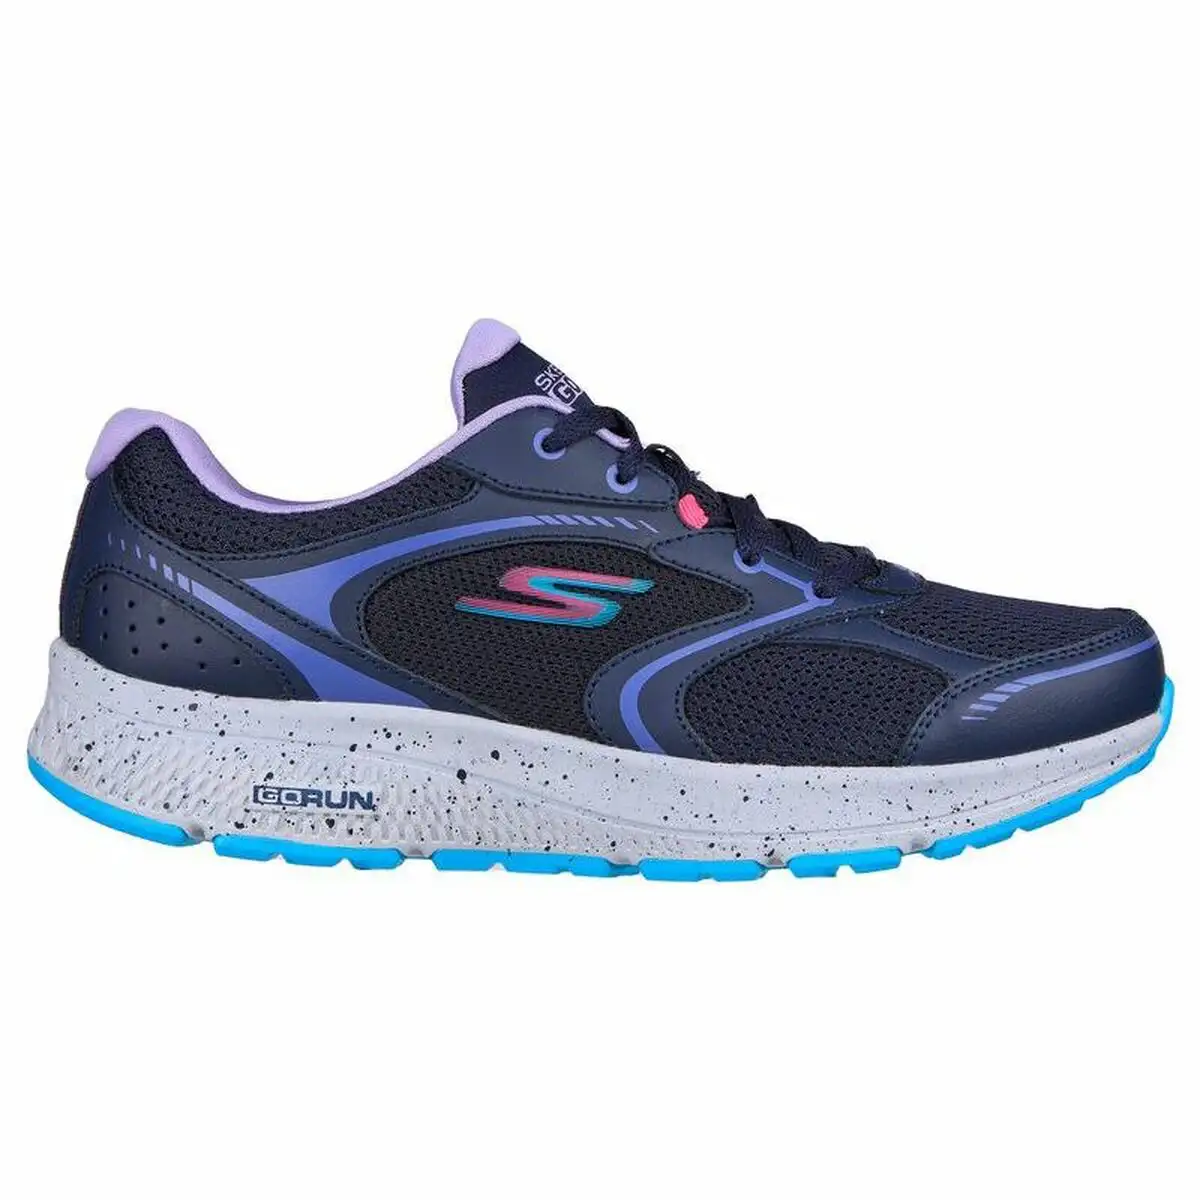 Chaussures de running pour adultes skechers go run consistent blue marine femme_6134. DIAYTAR SENEGAL - Où Choisir est un Plaisir. Explorez notre boutique en ligne et choisissez parmi des produits de qualité qui satisferont vos besoins et vos goûts.